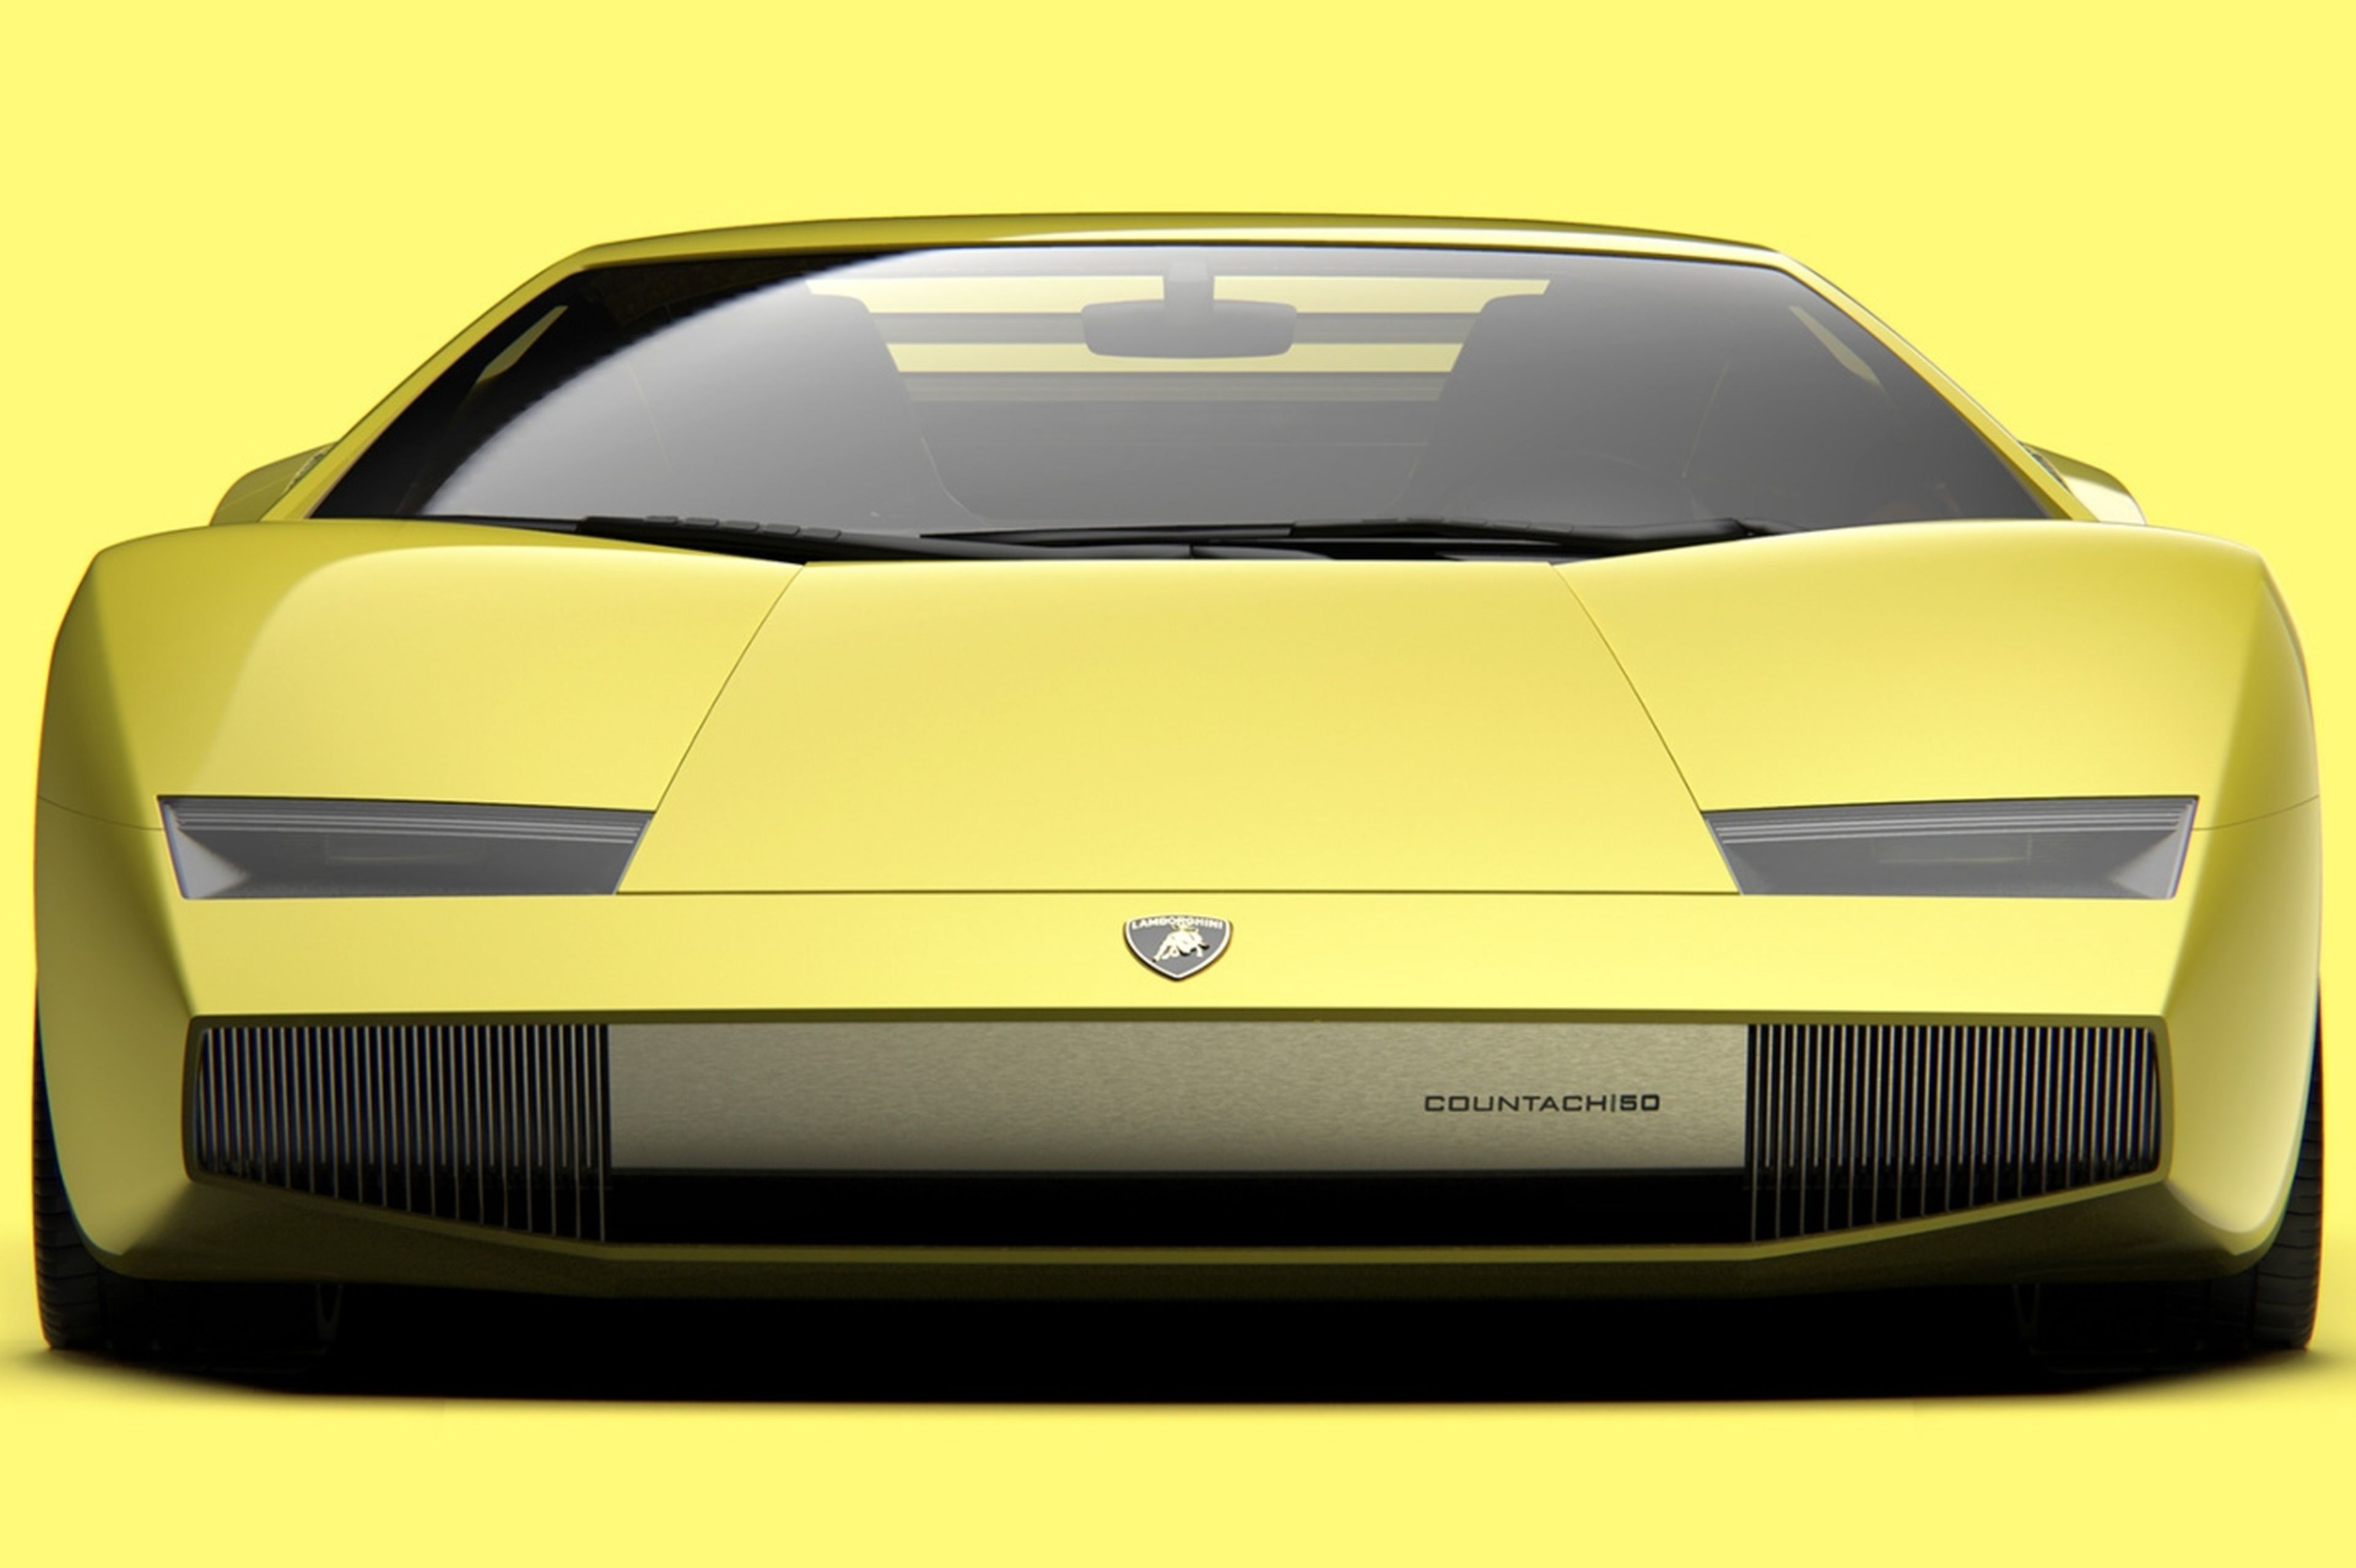 Lamborghini Countach 50 Omaggio frontal